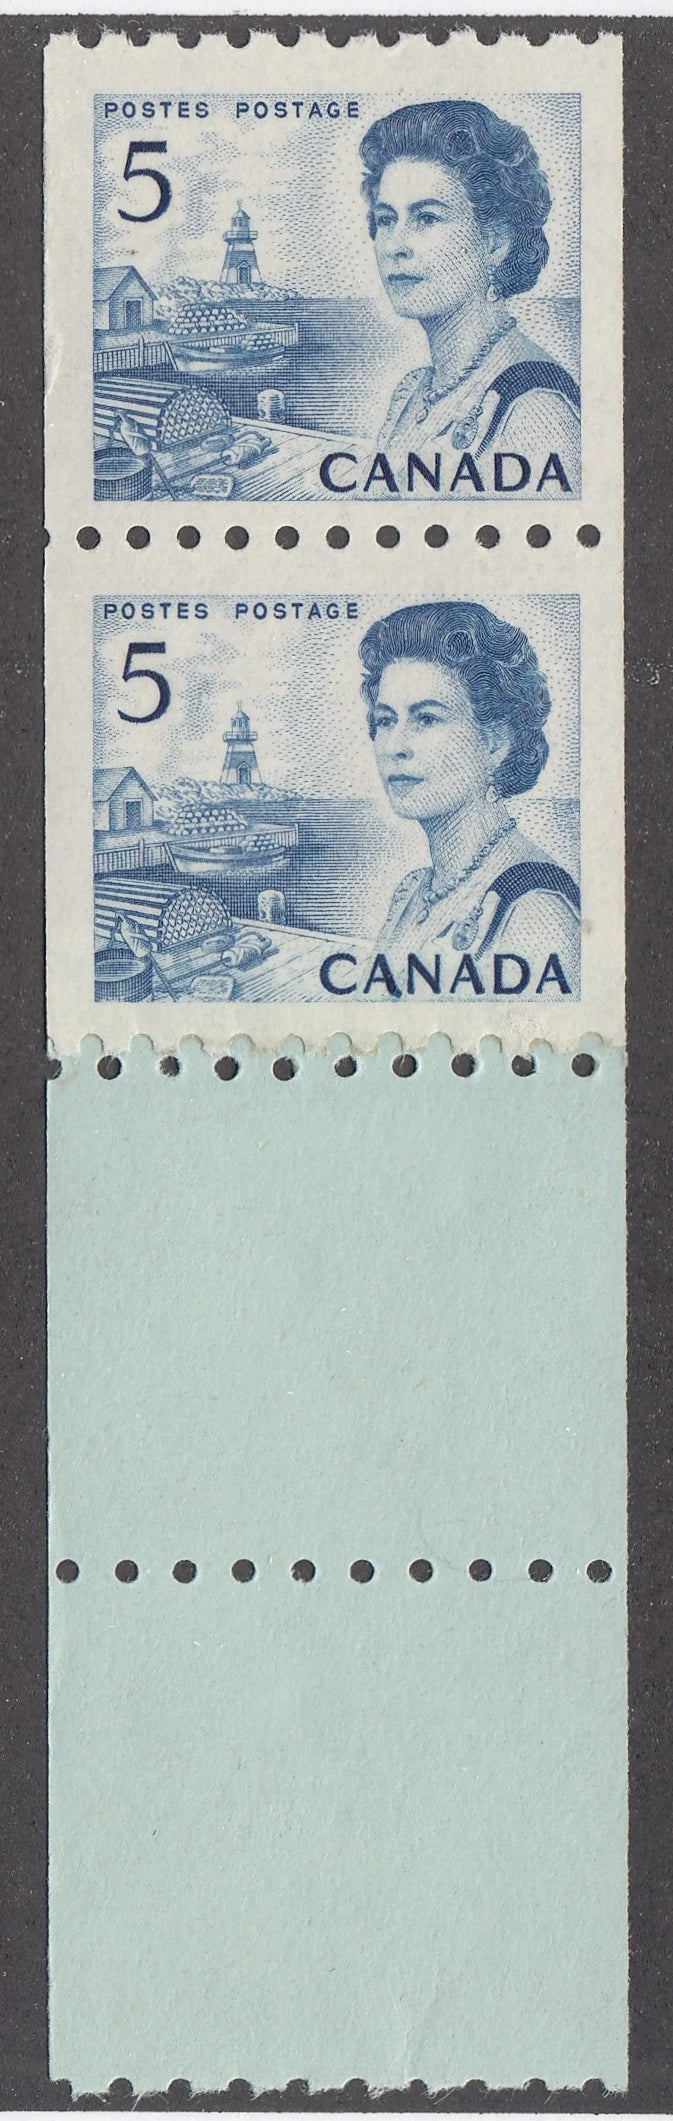 0468CA2105 - Canada #468 - Mint Coil Start Strip